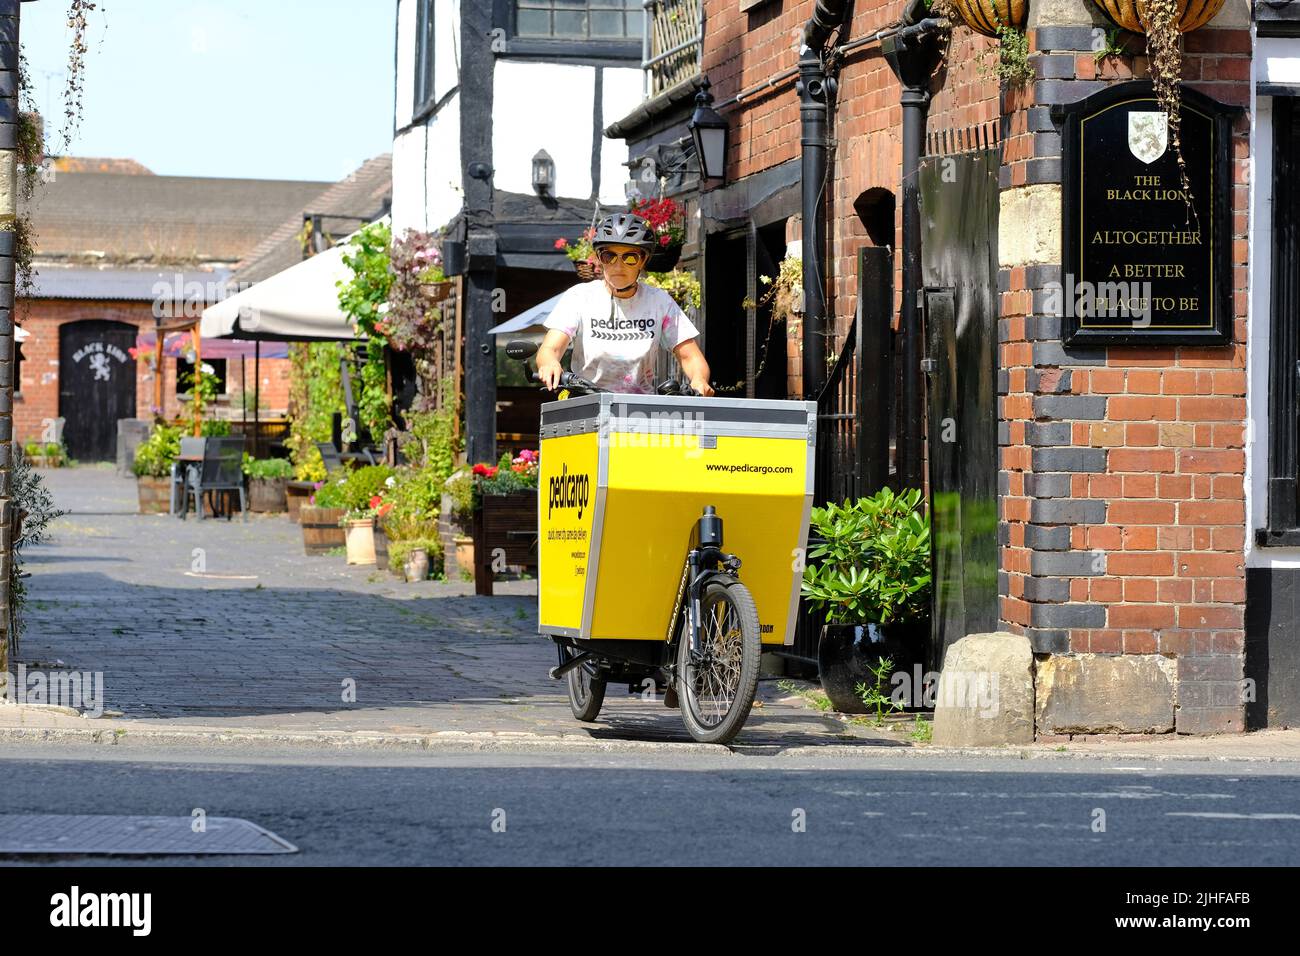 Pedicargo opera una flota de bicicletas de carga alrededor de Hereford Reino Unido para entregas comerciales locales y reciclaje de la recolección de residuos Foto de stock